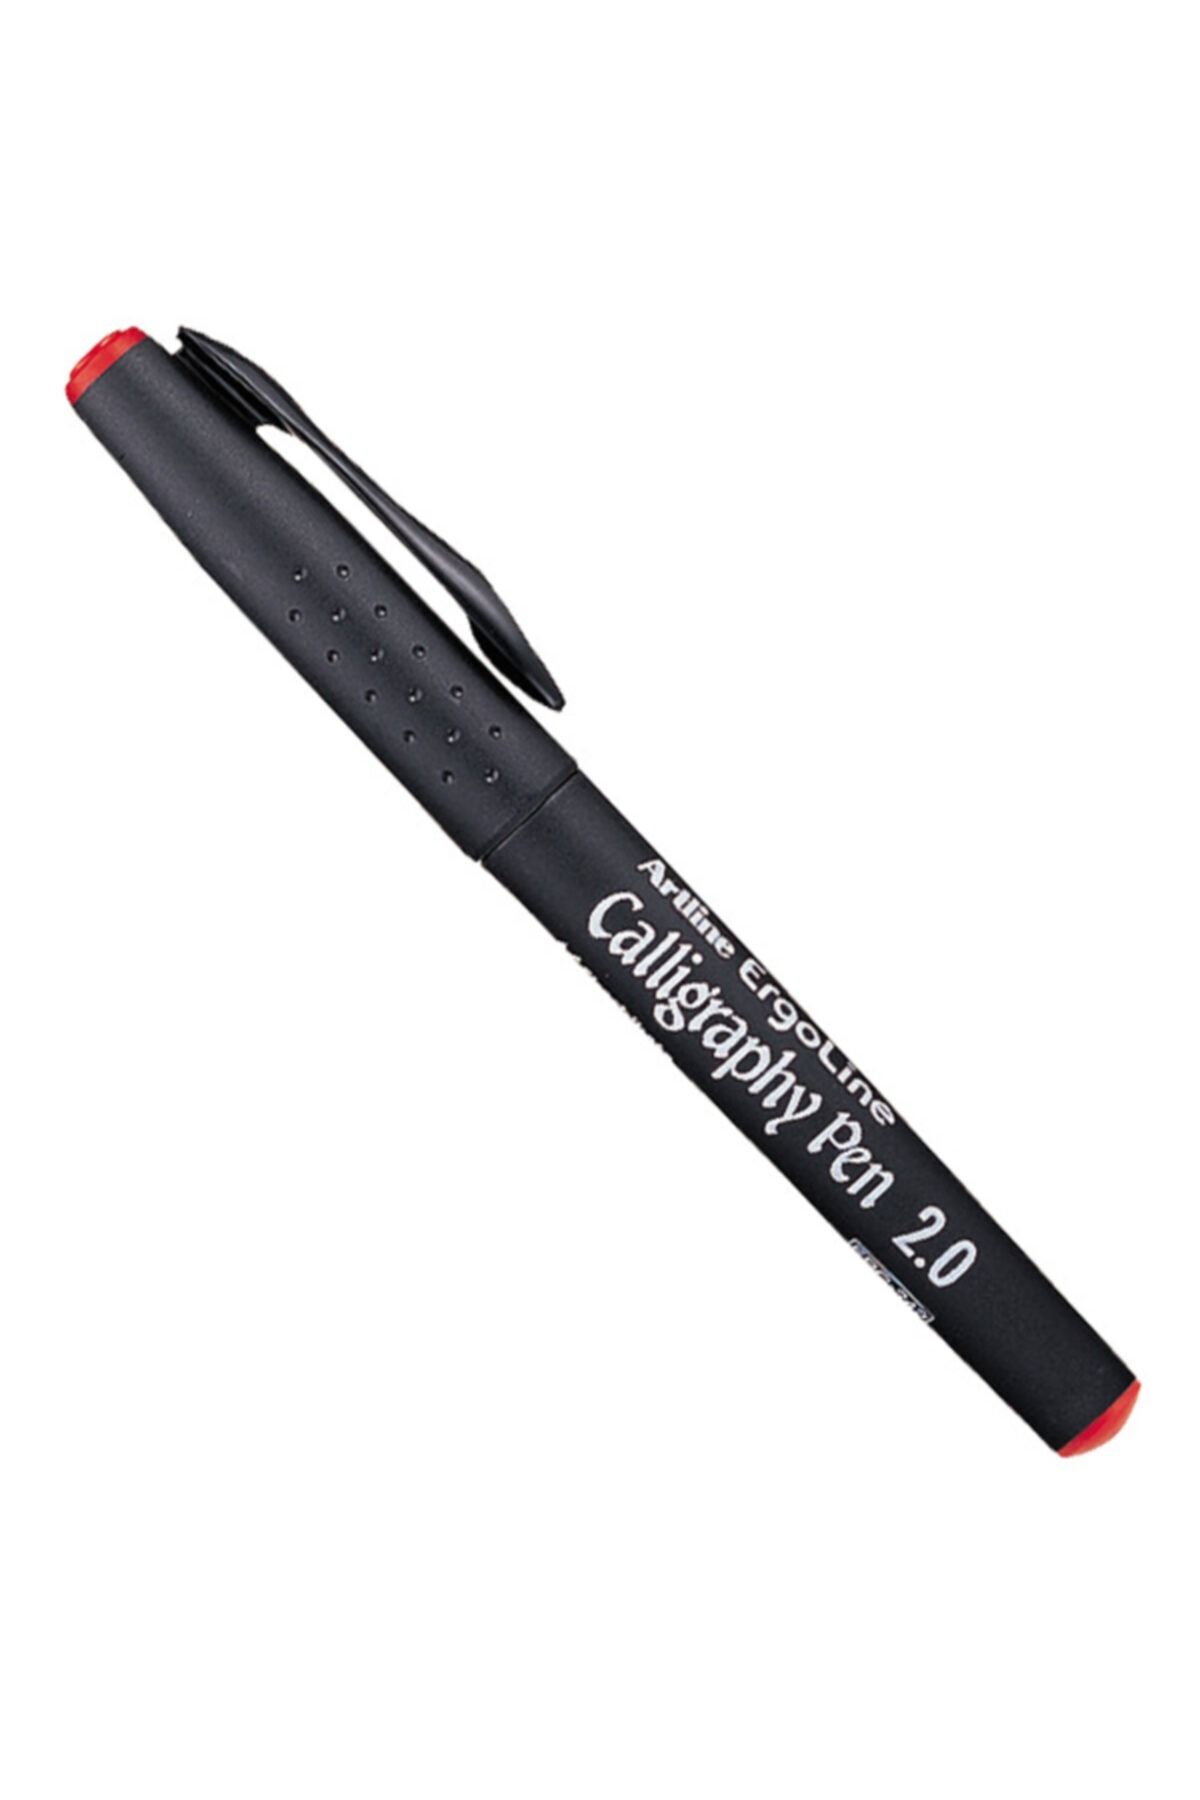 artline Artlıne Kaligrafi Kalemi Kırmızı 2.0mm Kesik Uçlu Ergolıne 242 Tek Adet Fiyatıdır